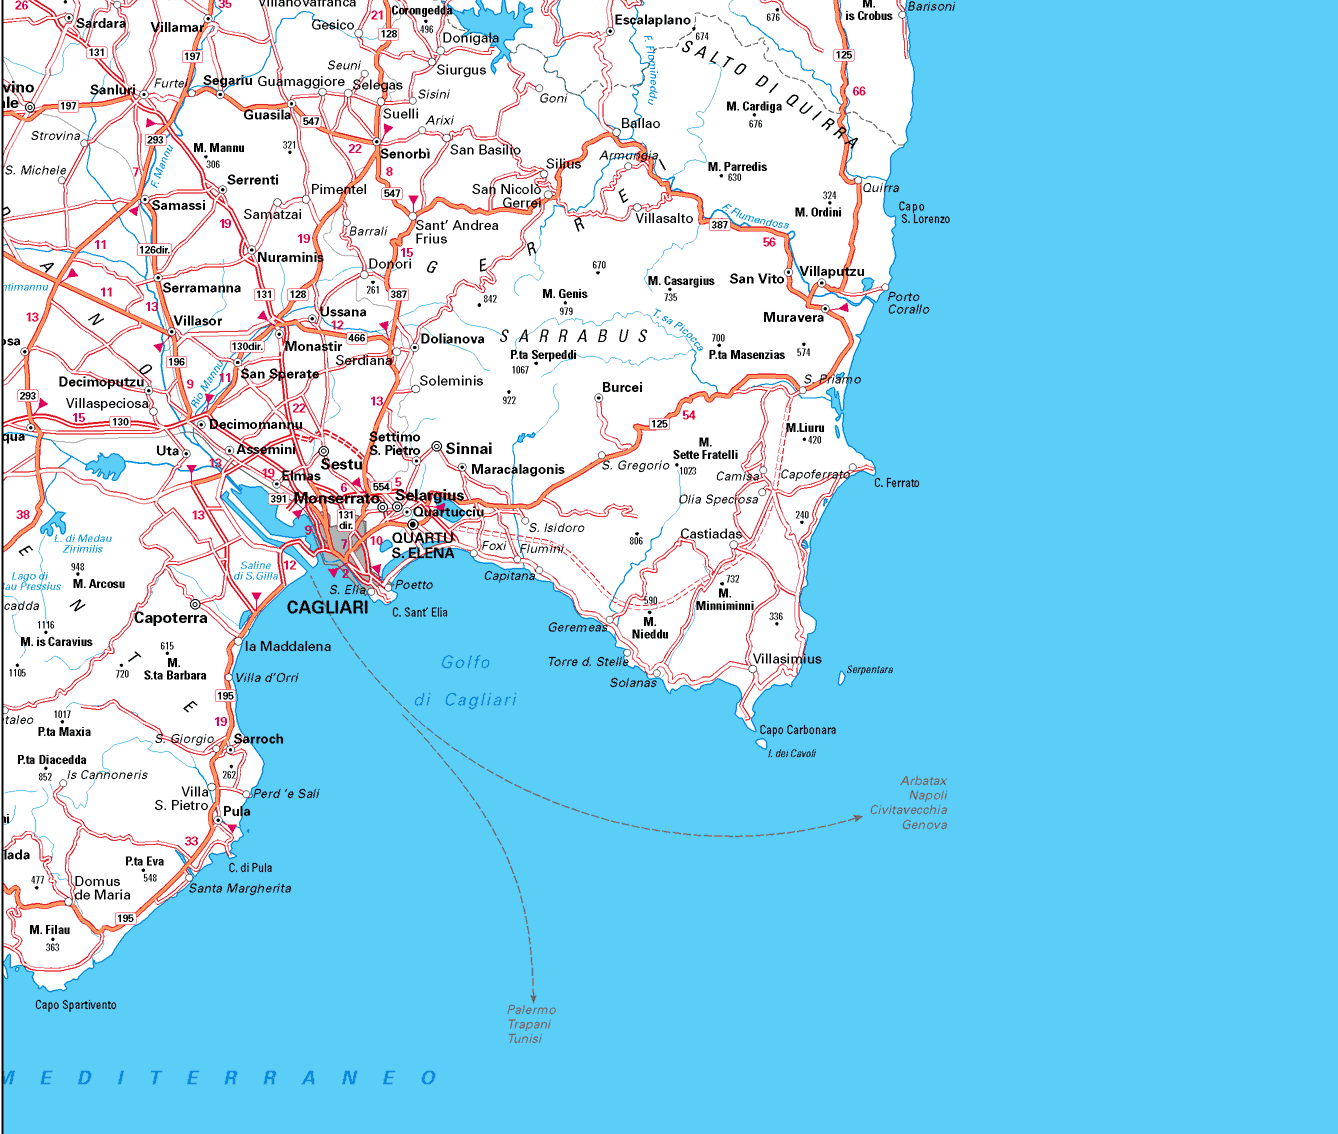 Cagliari zone plan